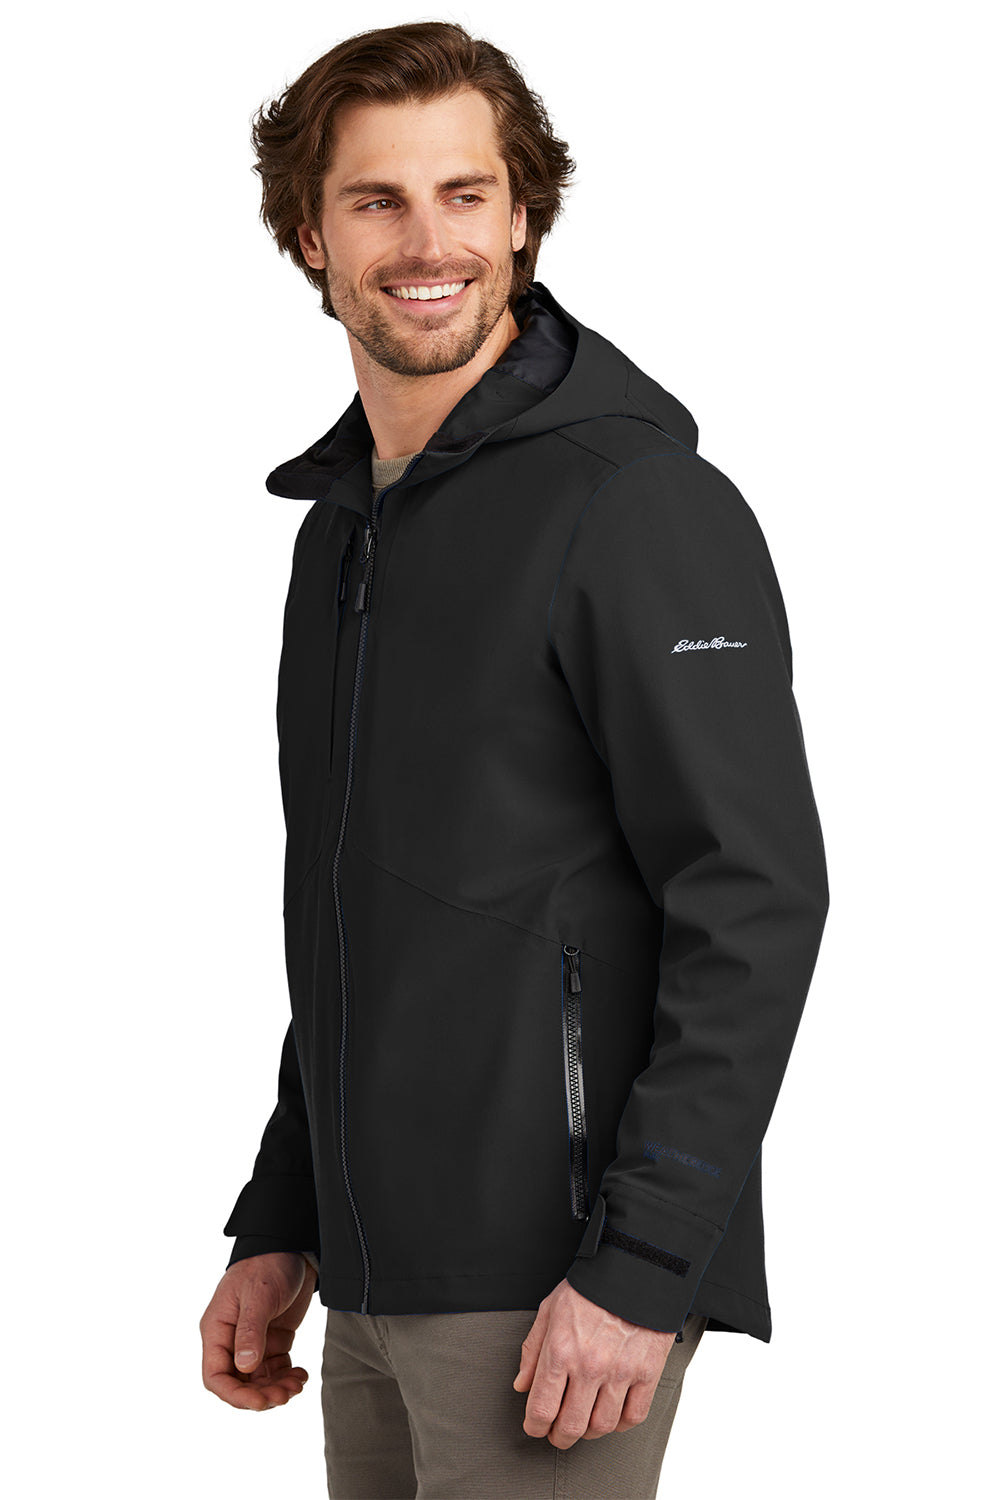 Eddie Bauer EB560 Mens WeatherEdge Plus Waterproof Full Zip Hooded Jacket Deep Black Model Side